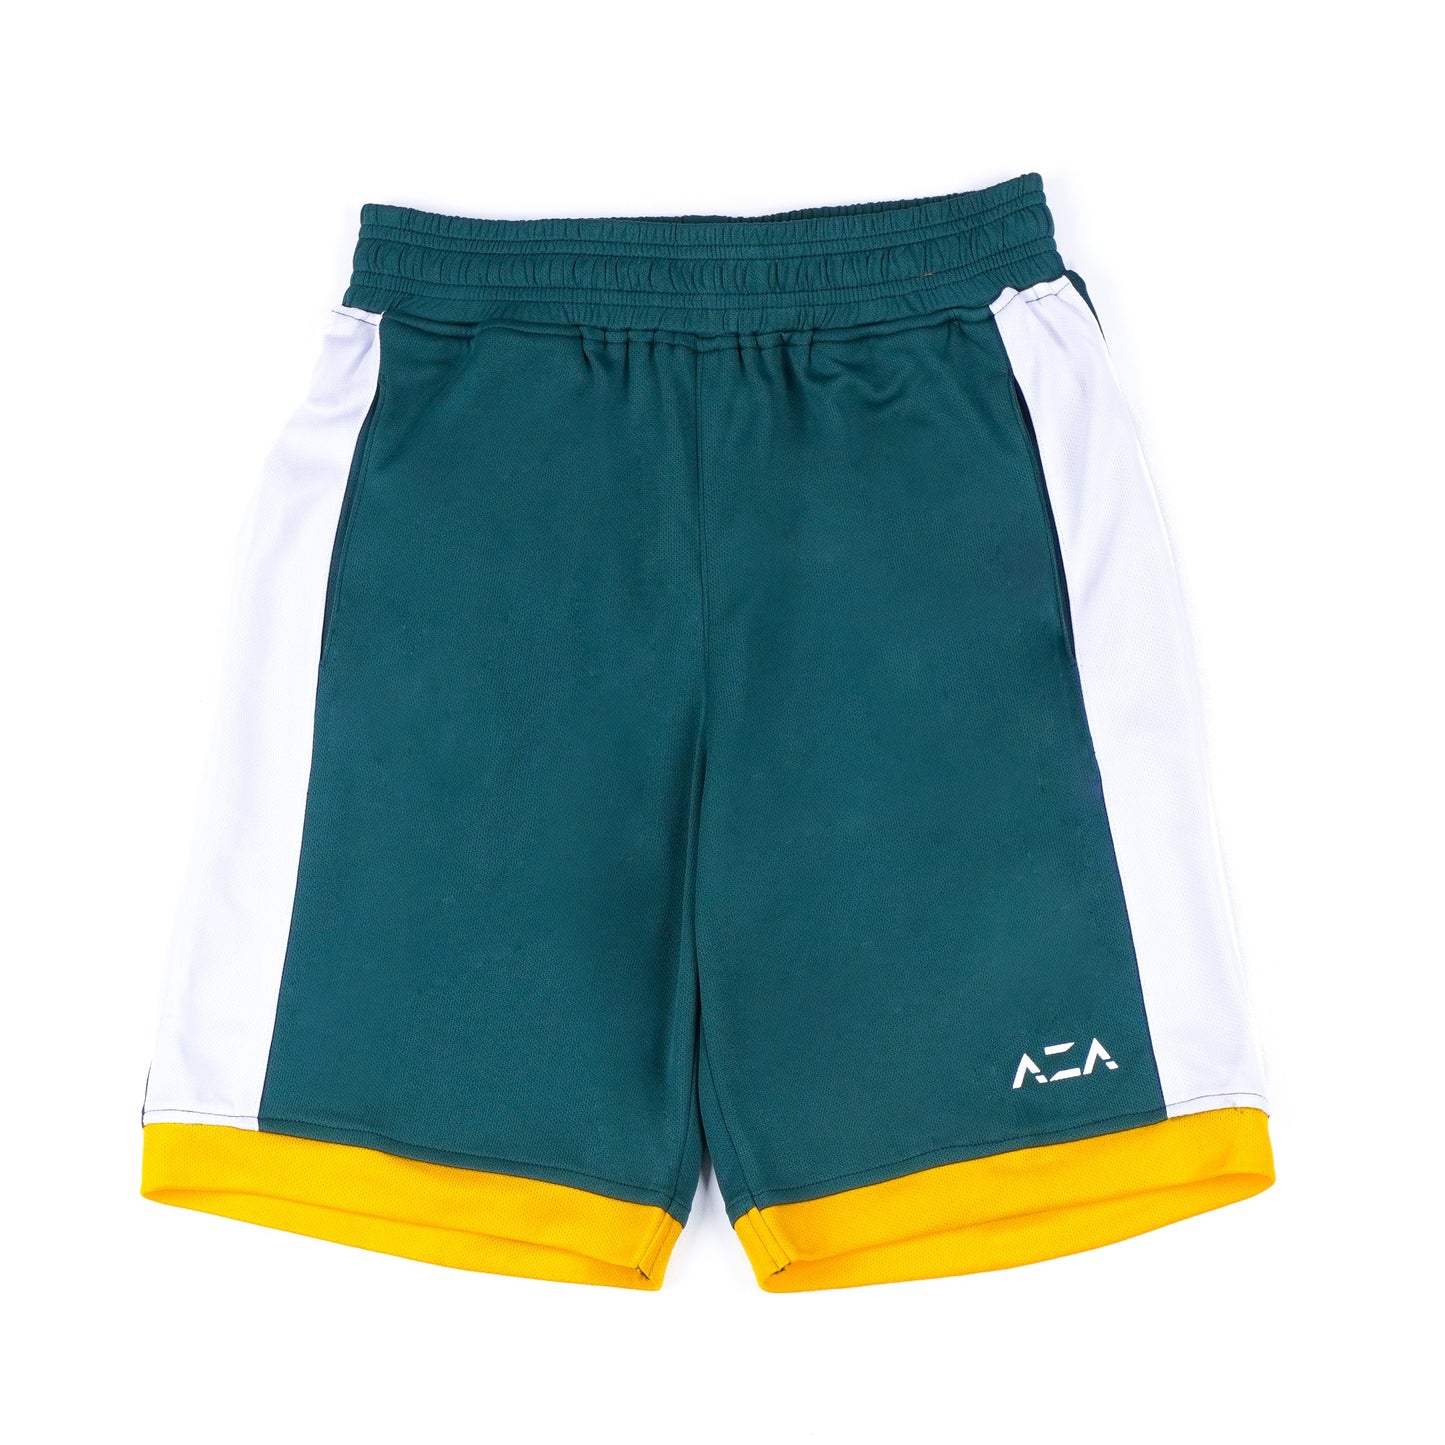 AZA Short Pants Basketball Elite Series - Green